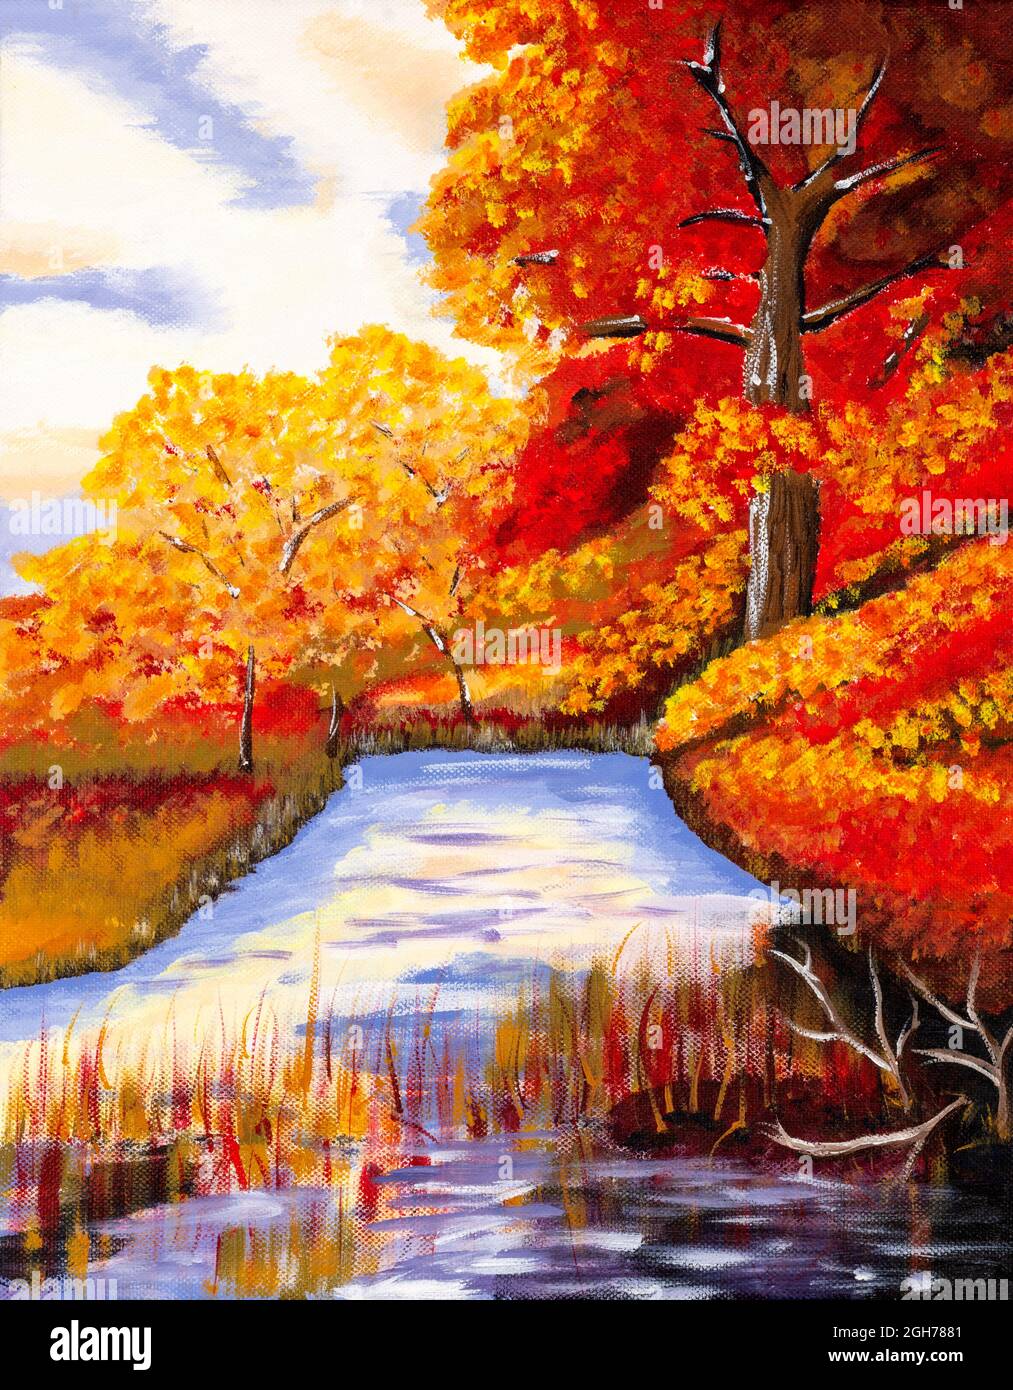 Peinture de style naïf représentant un paysage de campagne avec un ruisseau. Couleurs strident d'apprêt. Banque D'Images